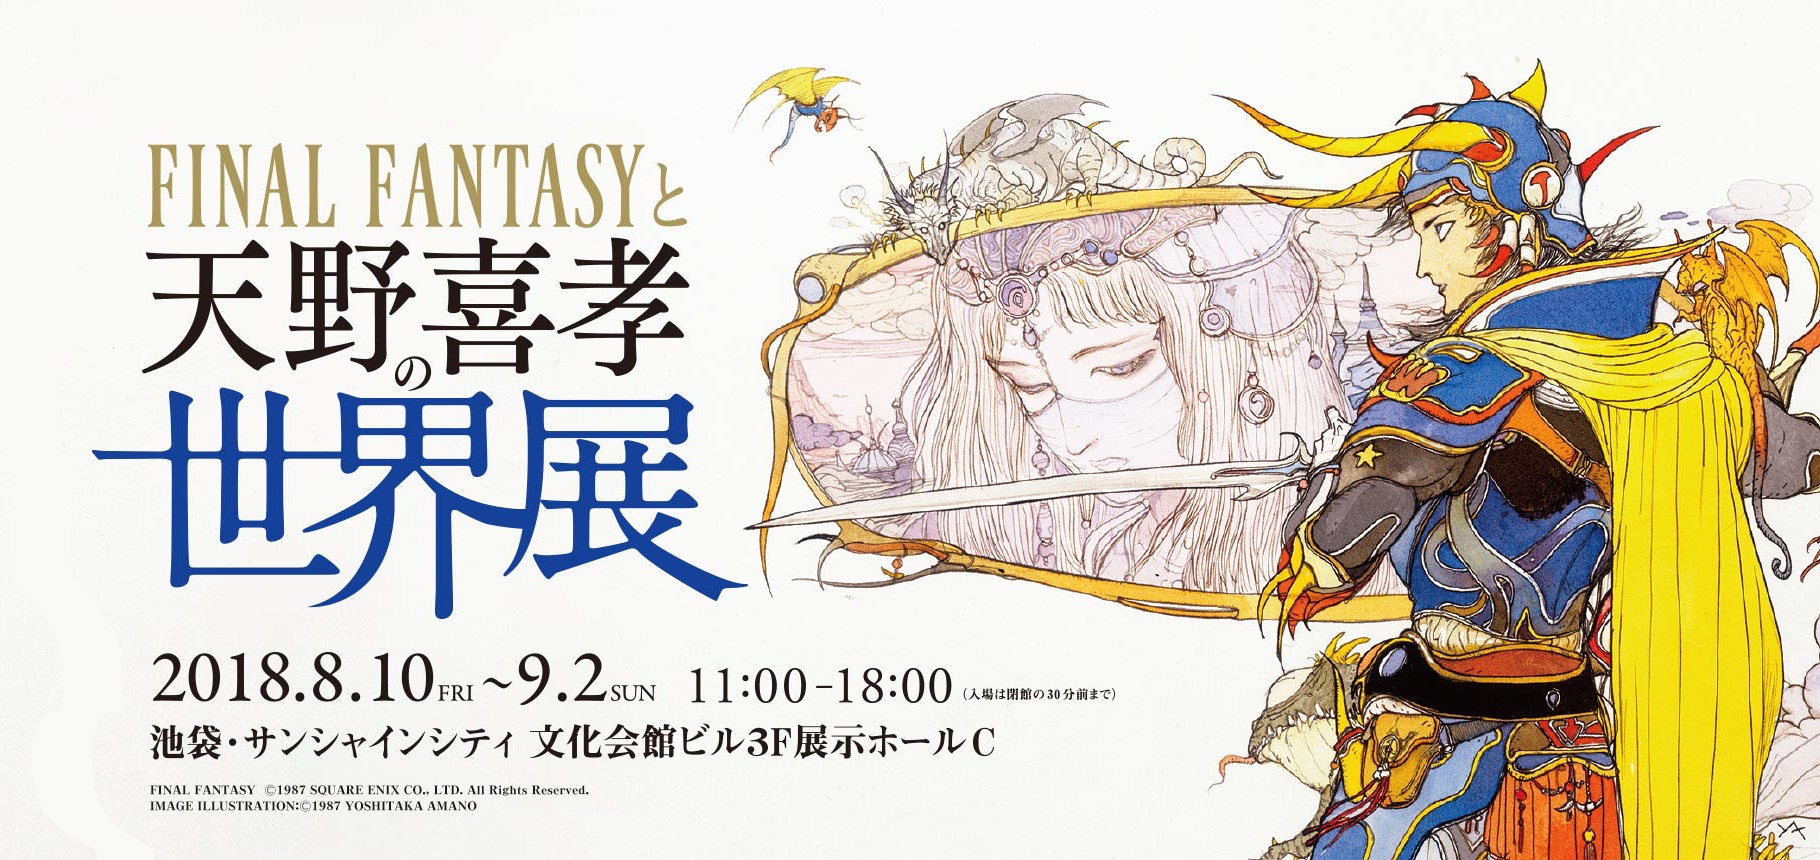 天野喜孝畫展8 月池袋登場將展出150 幅 Final Fantasy 歷代原畫 巴哈姆特